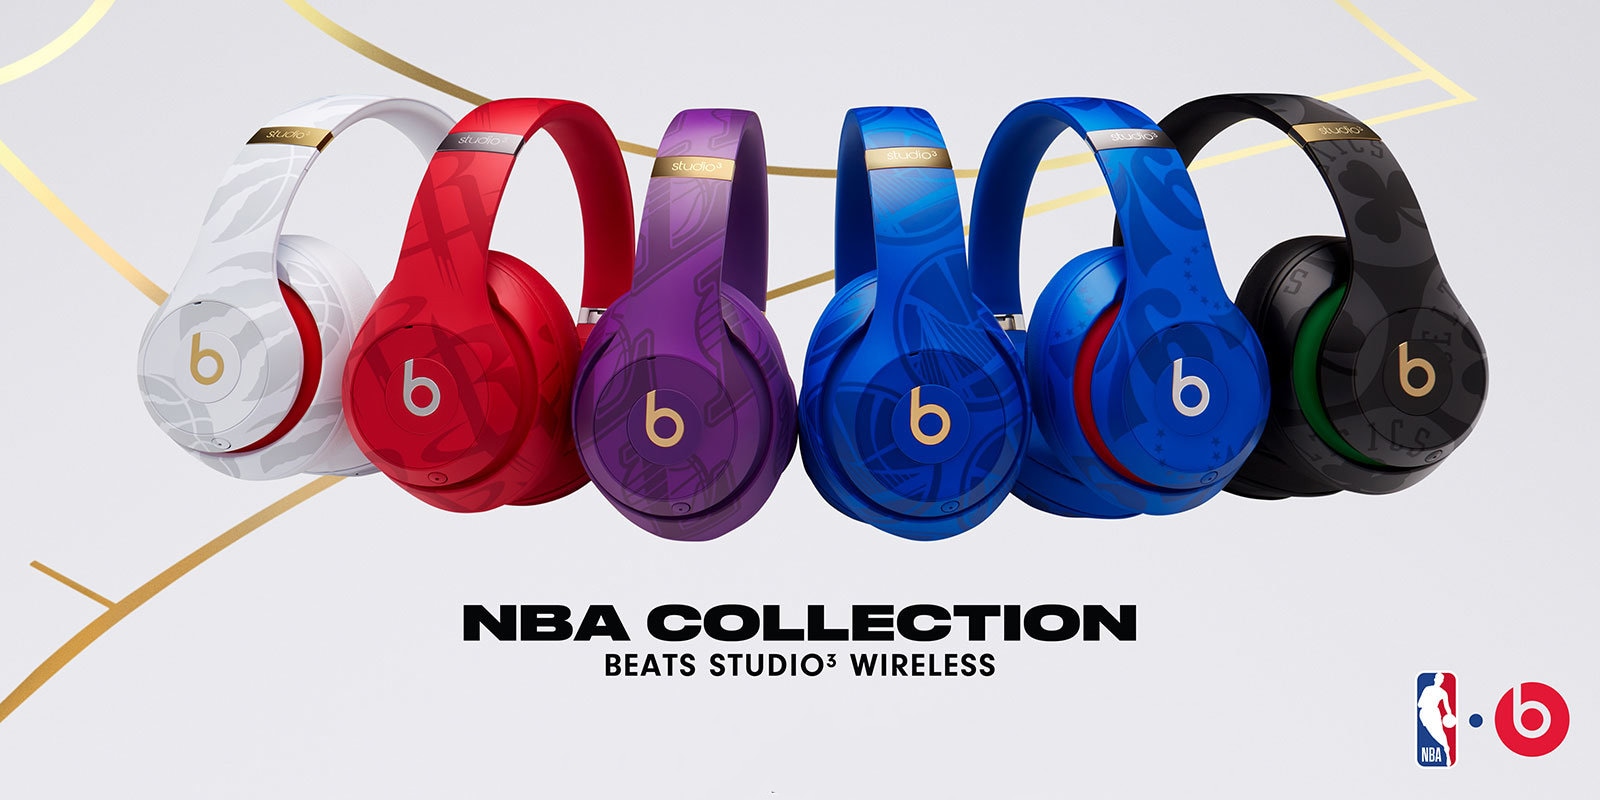 Beats tõi koos NBA meeskonnaga välja Studio3 Wirelessi teemastatud versiooni